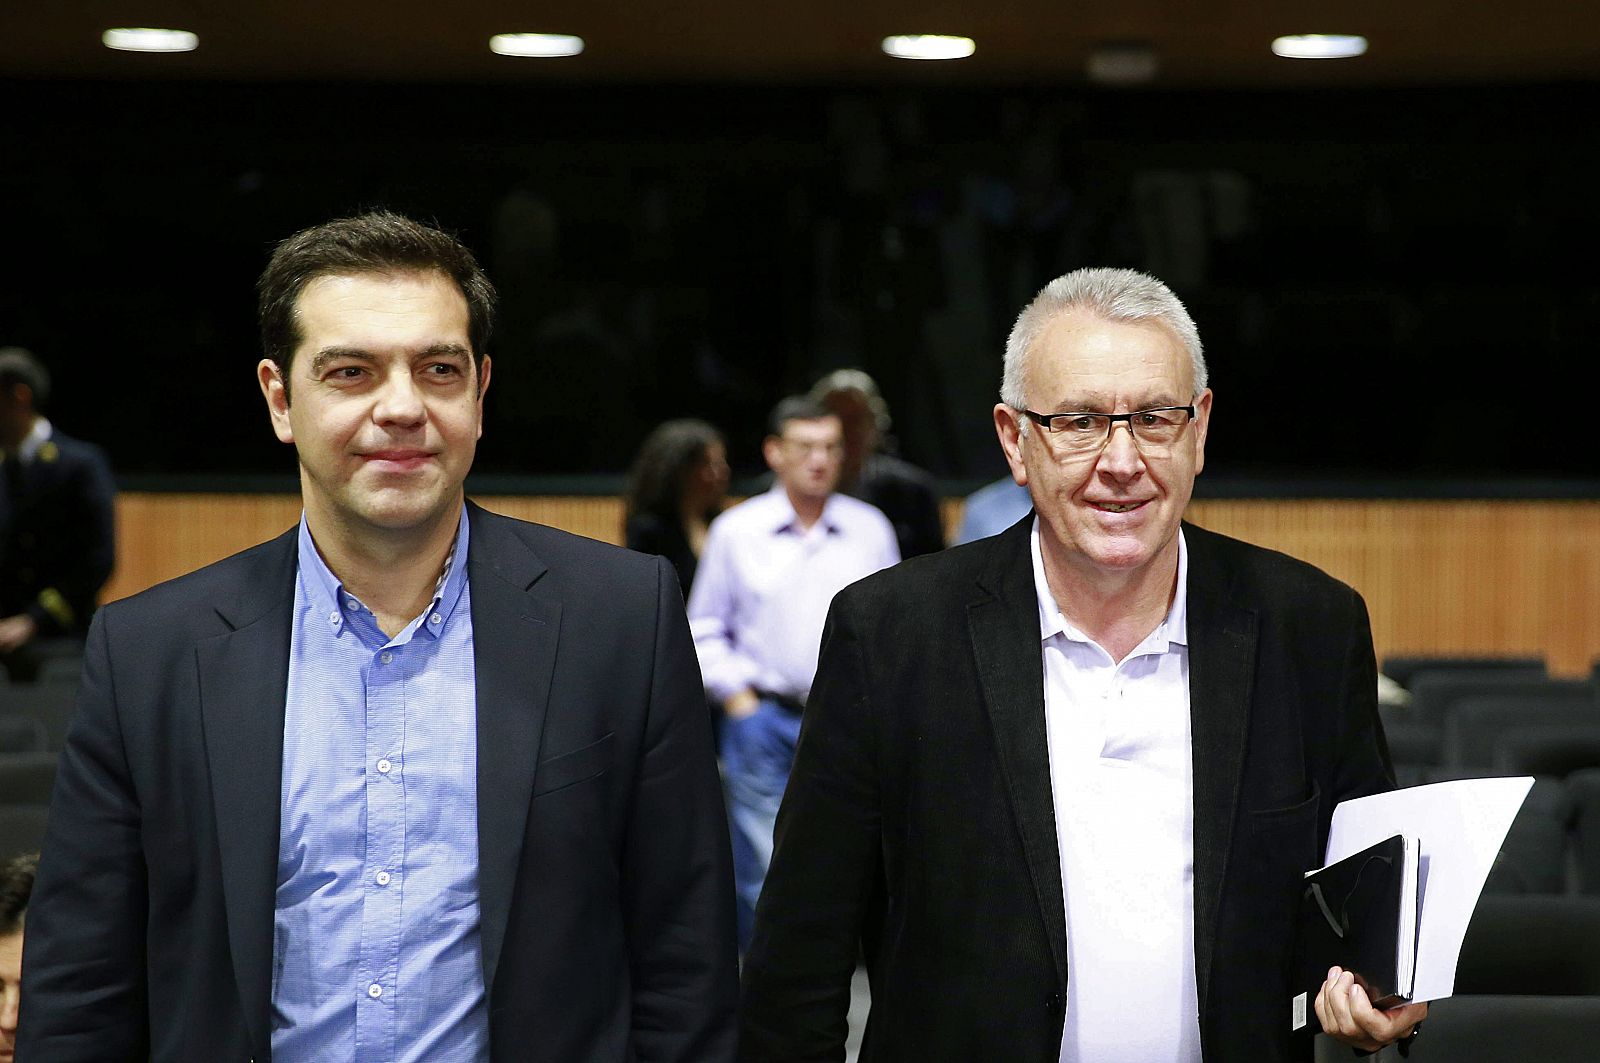 El coordinador federal de IU, Cayo Lara, junto al líder de Syriza, Alexis Tsipras, en el Congreso.